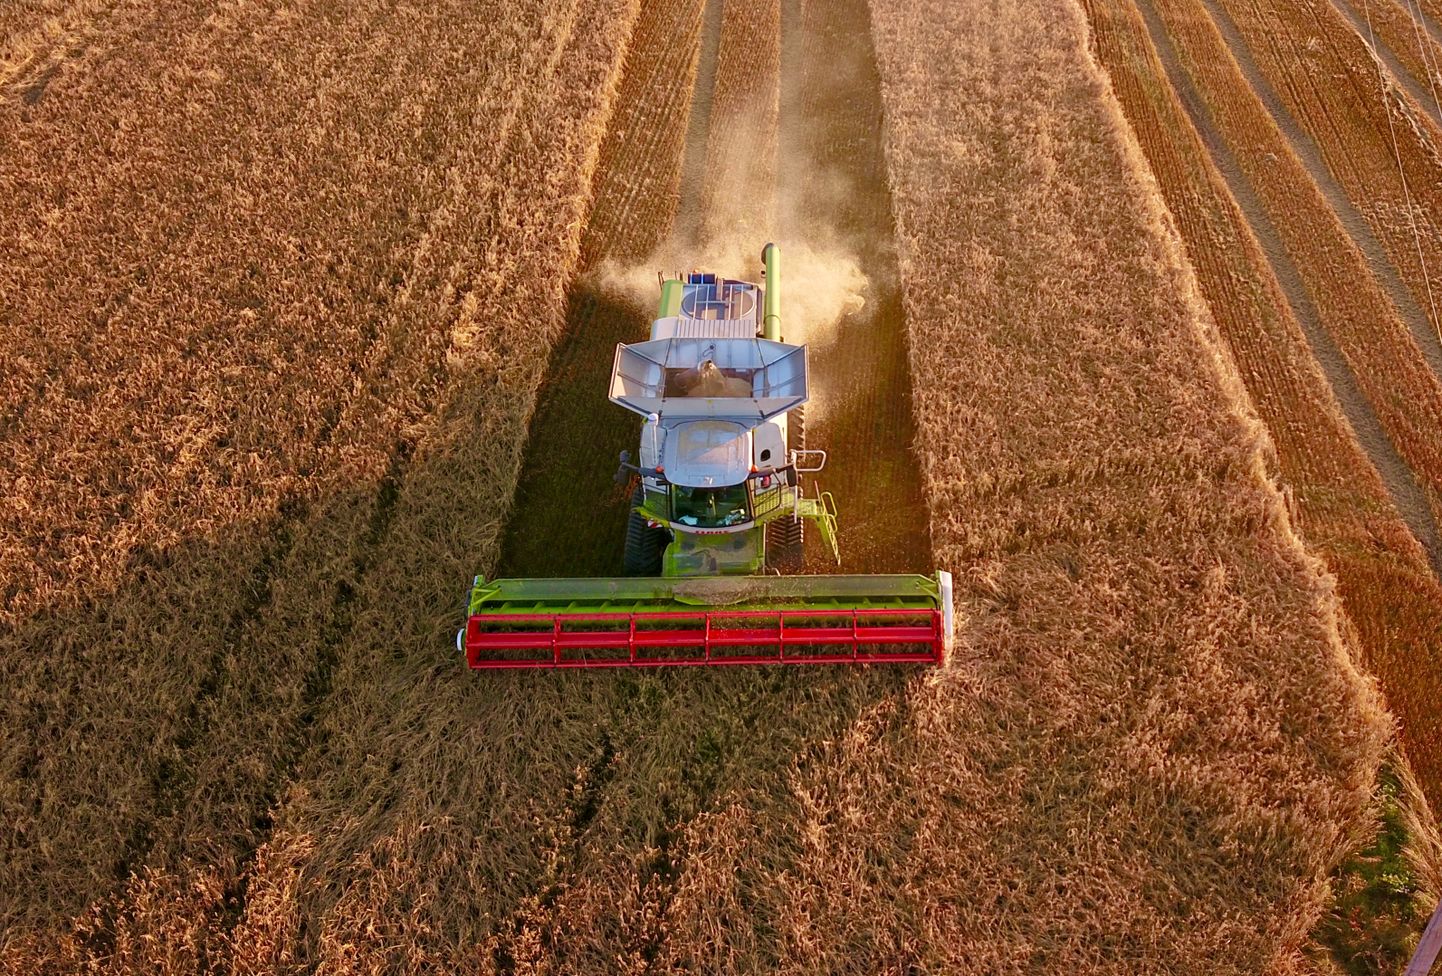 Läti rakendab oma põllumajandustootjatele ka oluliselt suuremat soodustust põllumajandusliku kütuse maksustamisel.Arvestades Eesti põllumajanduses tarbitavat erimärgistatud kütuse kogust, saavad lätlased aktsiisisoodustuse kaudu võrreldes meie põllumajandustootjatega täiendavalt 6,9 miljoni euro suuruse eelise.